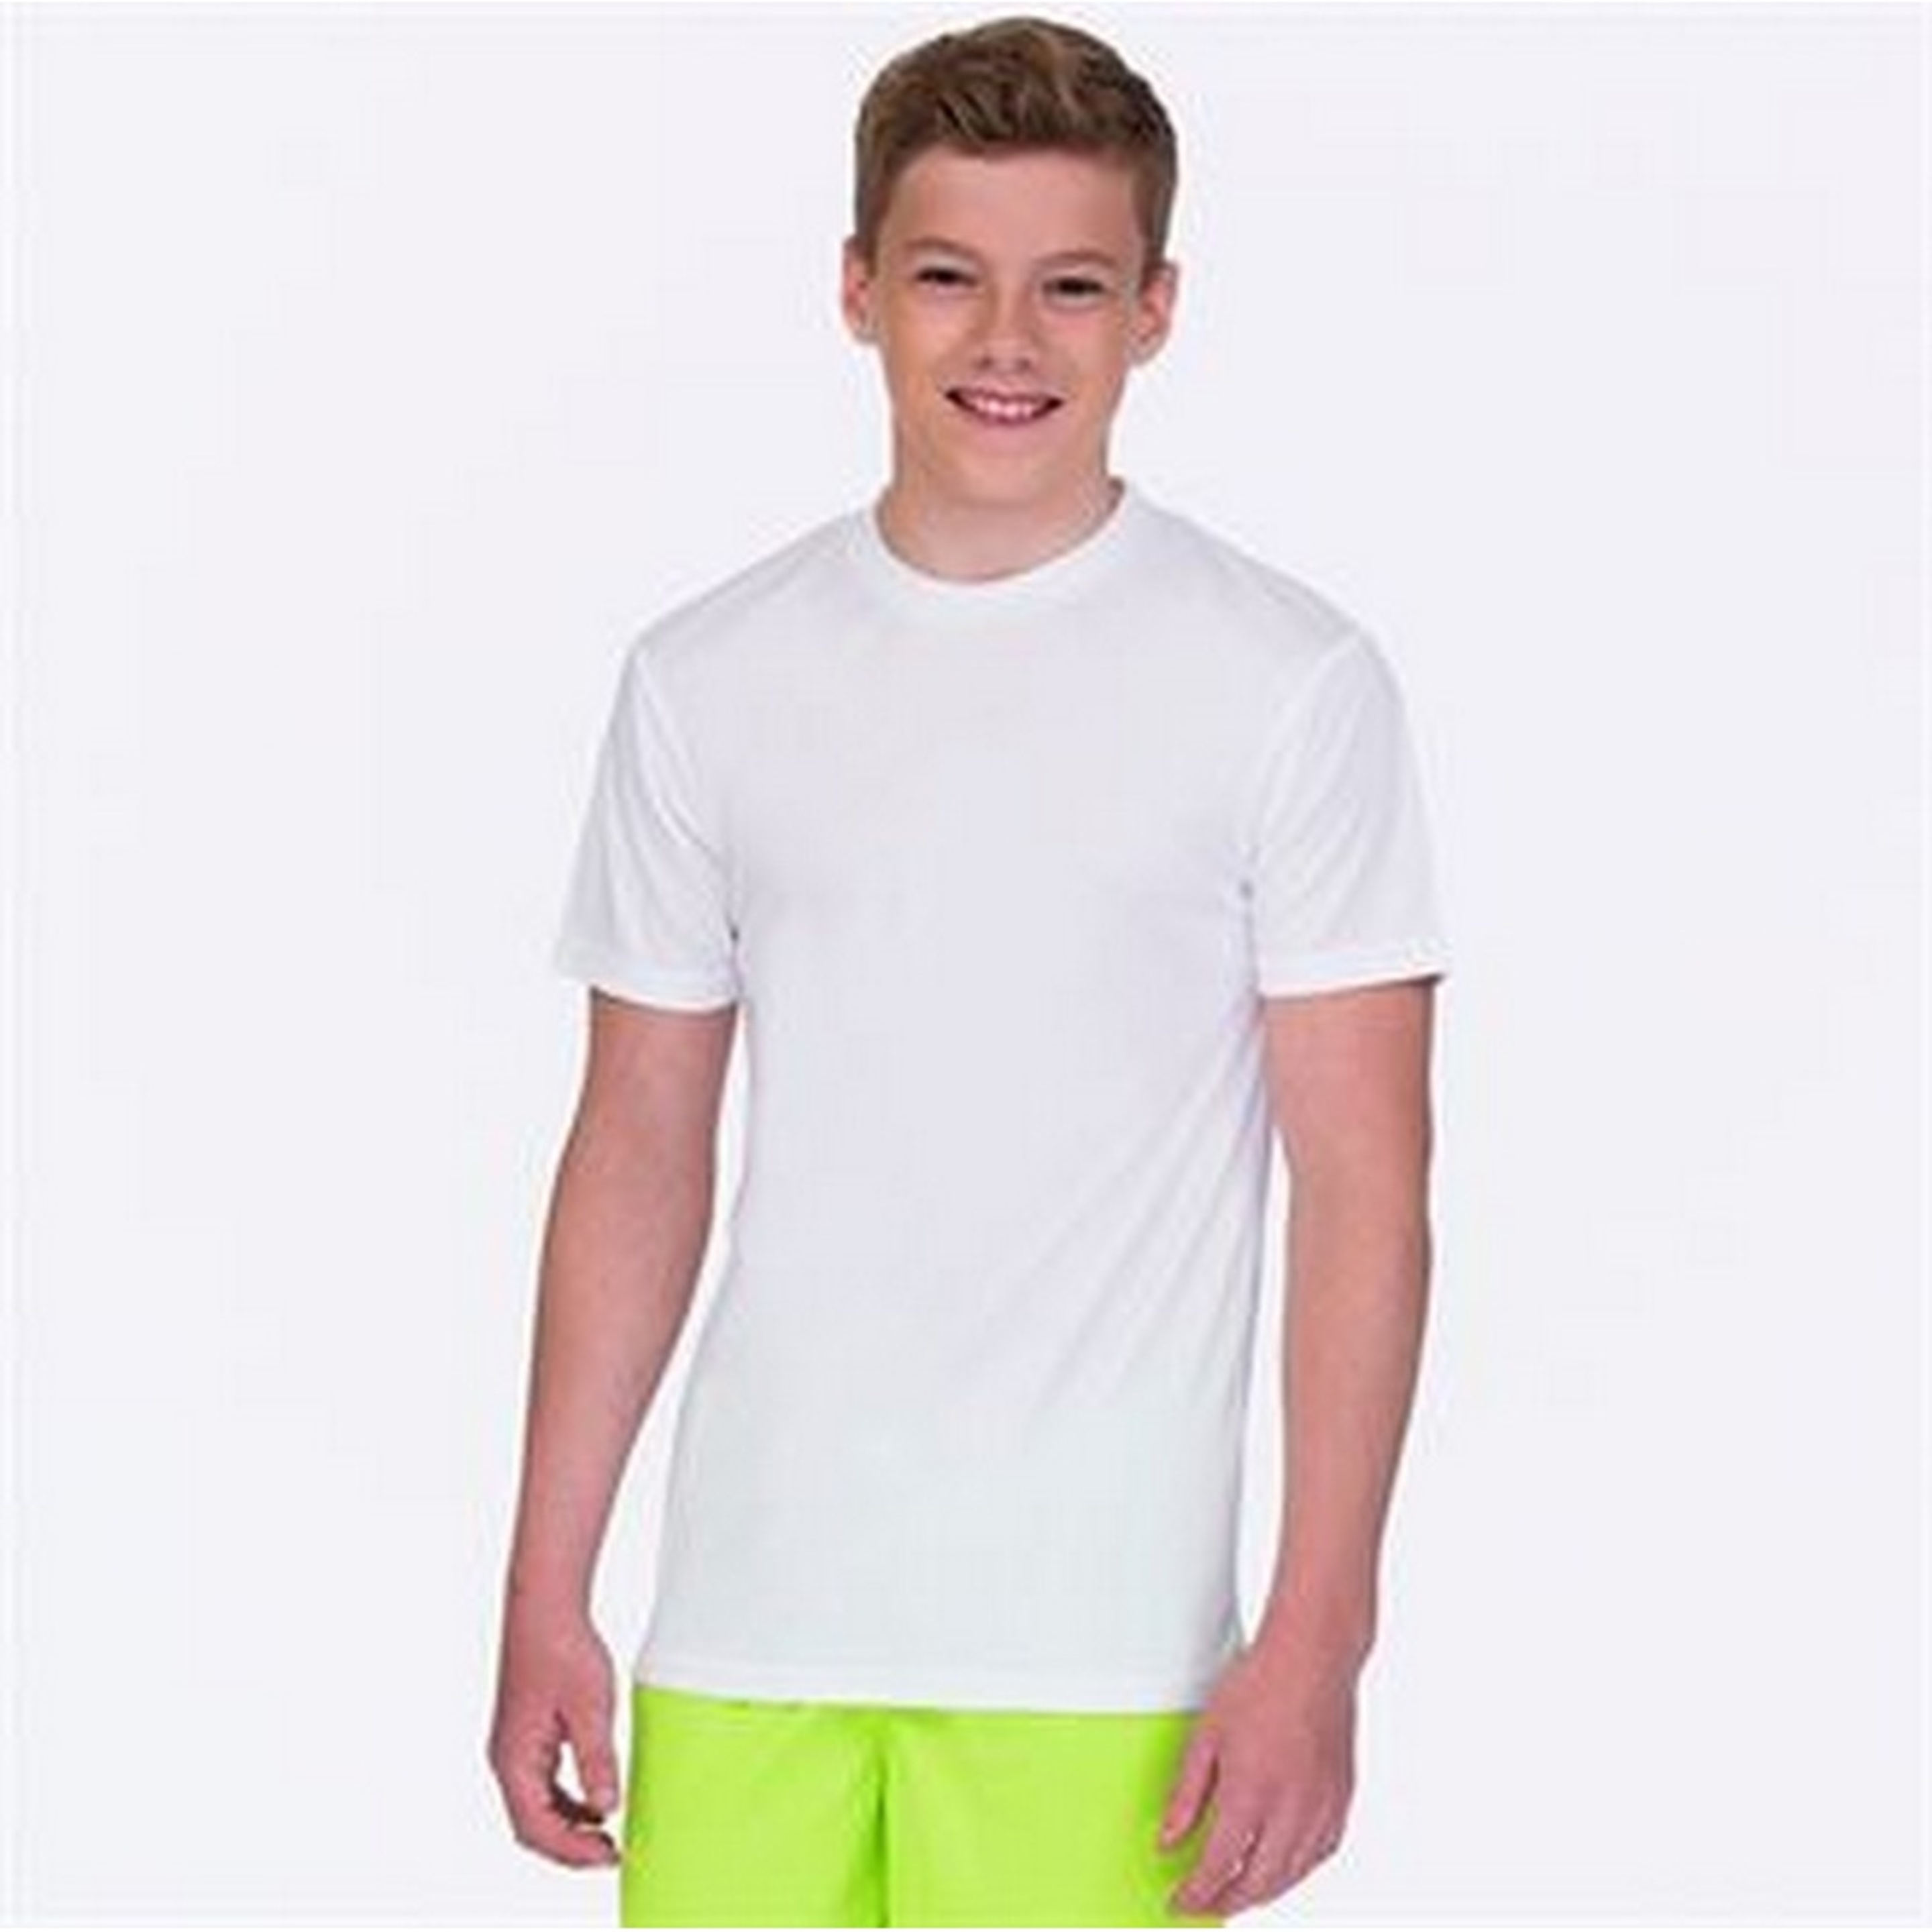 Camiseta Awdis Cool - Blanco  MKP